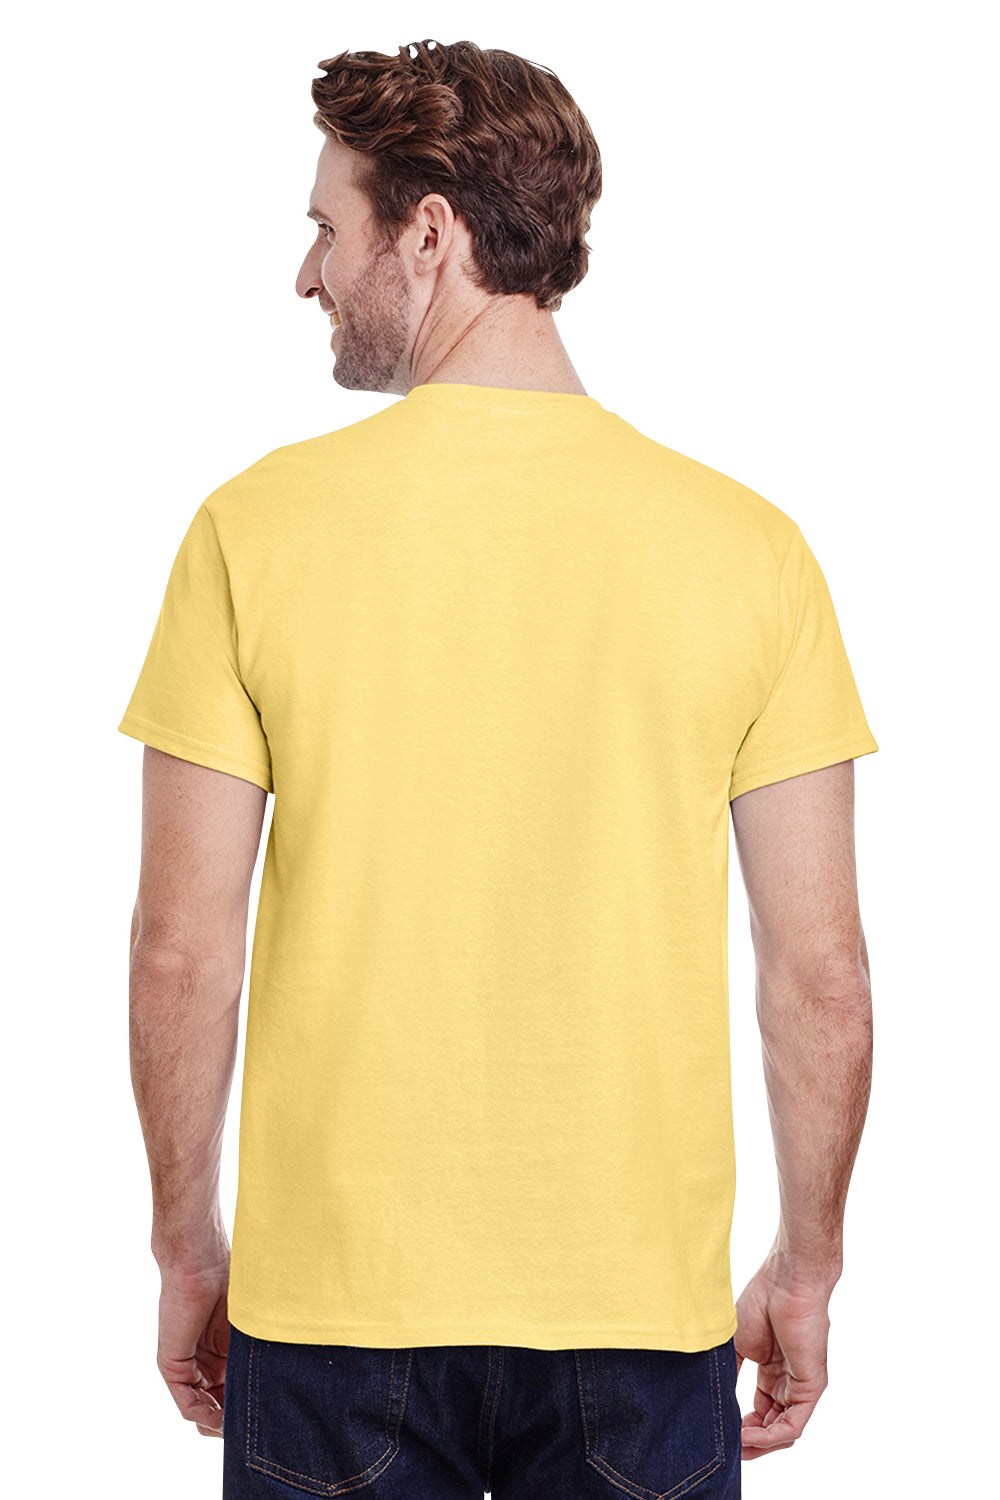 Gildan G200 Mens Ultra Short Sleeve Crewneck T-Shirt Cornsilk Yellow Back